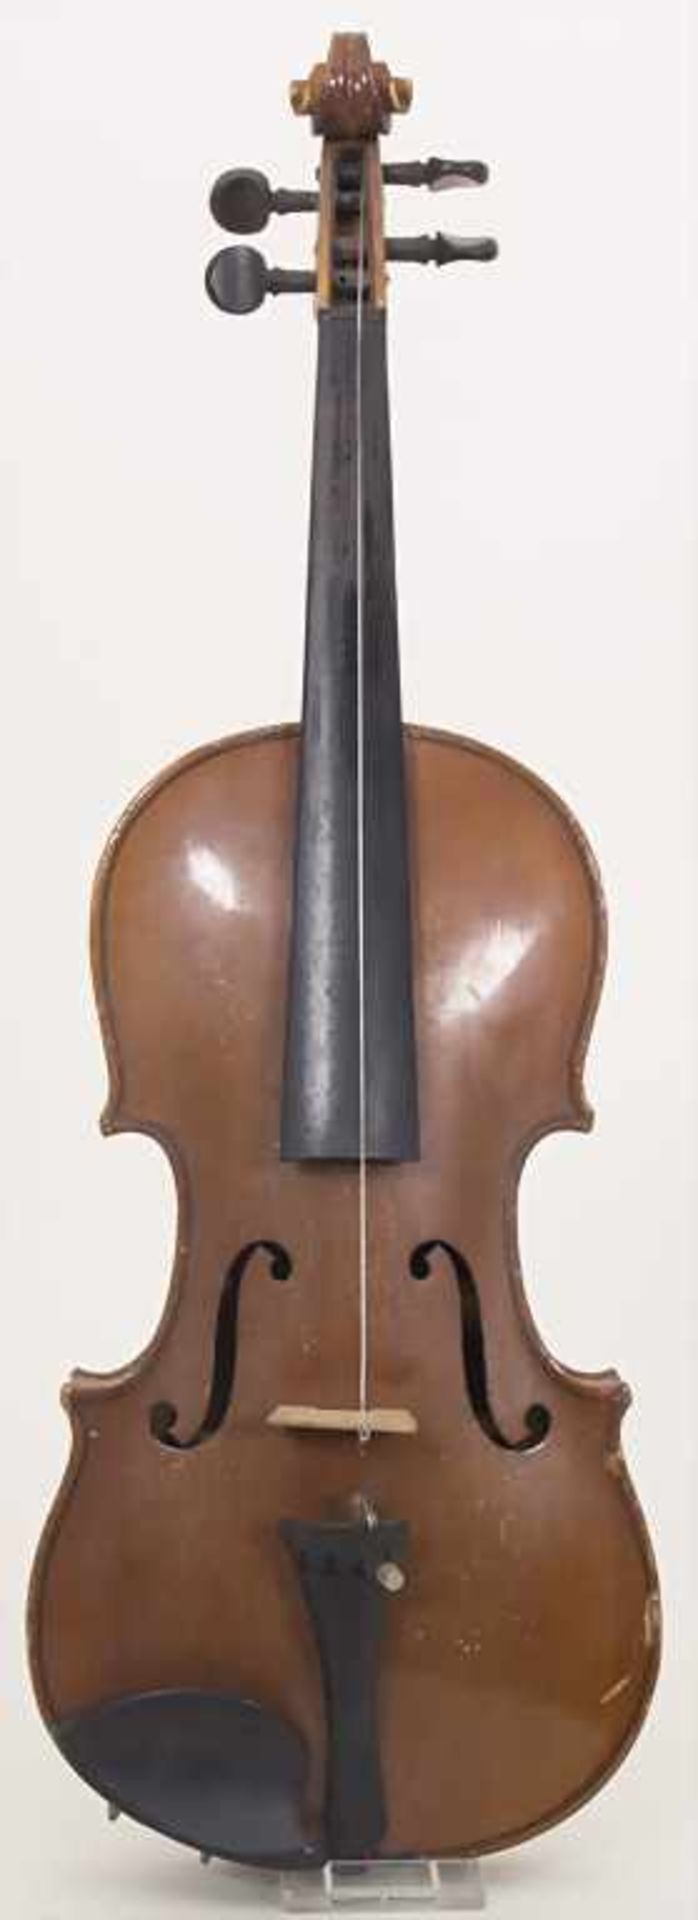 Violine / A violin, Klingenthal i. SachsenGeige: 3/4 Größe, Schülergeige, rotbrauner Lack,